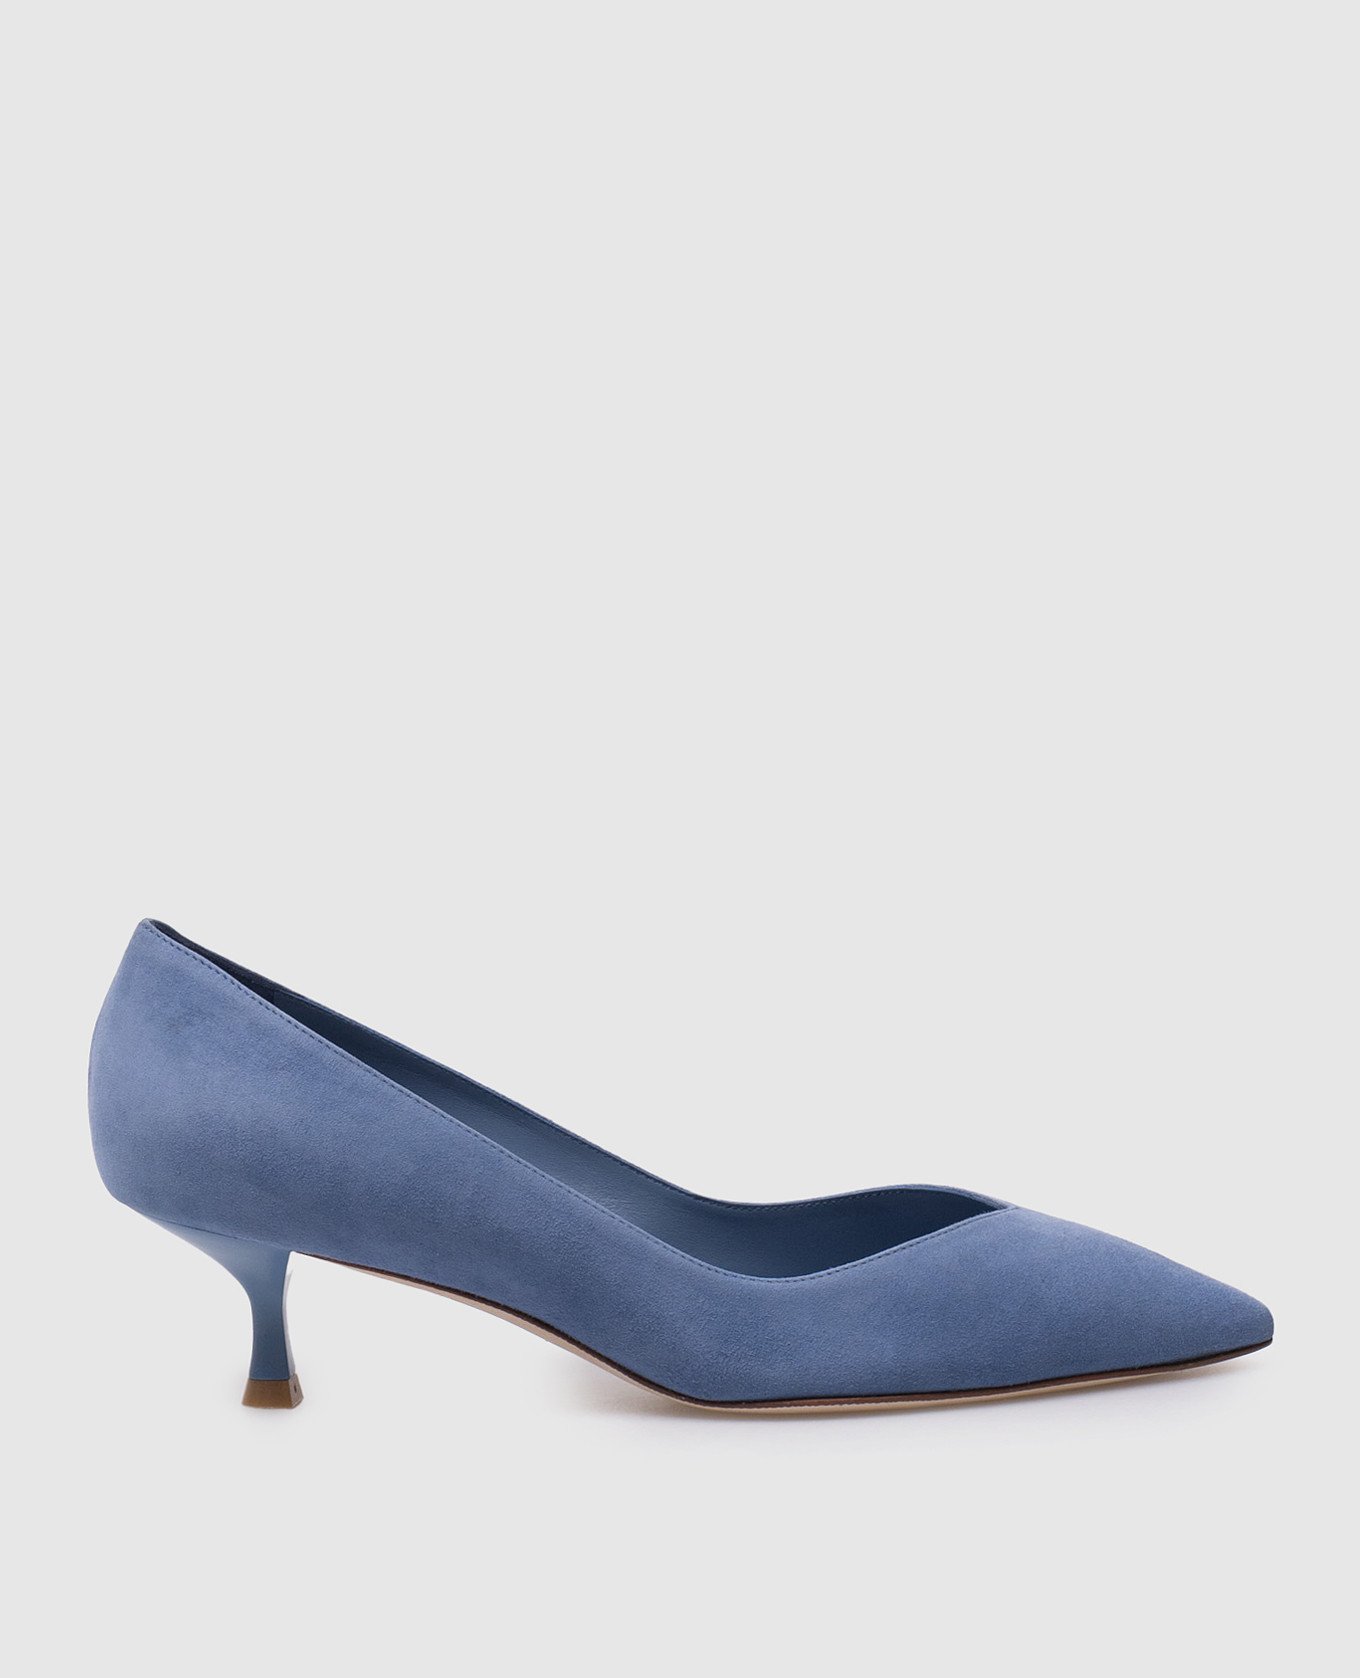 Blue suede EVA boat shoes